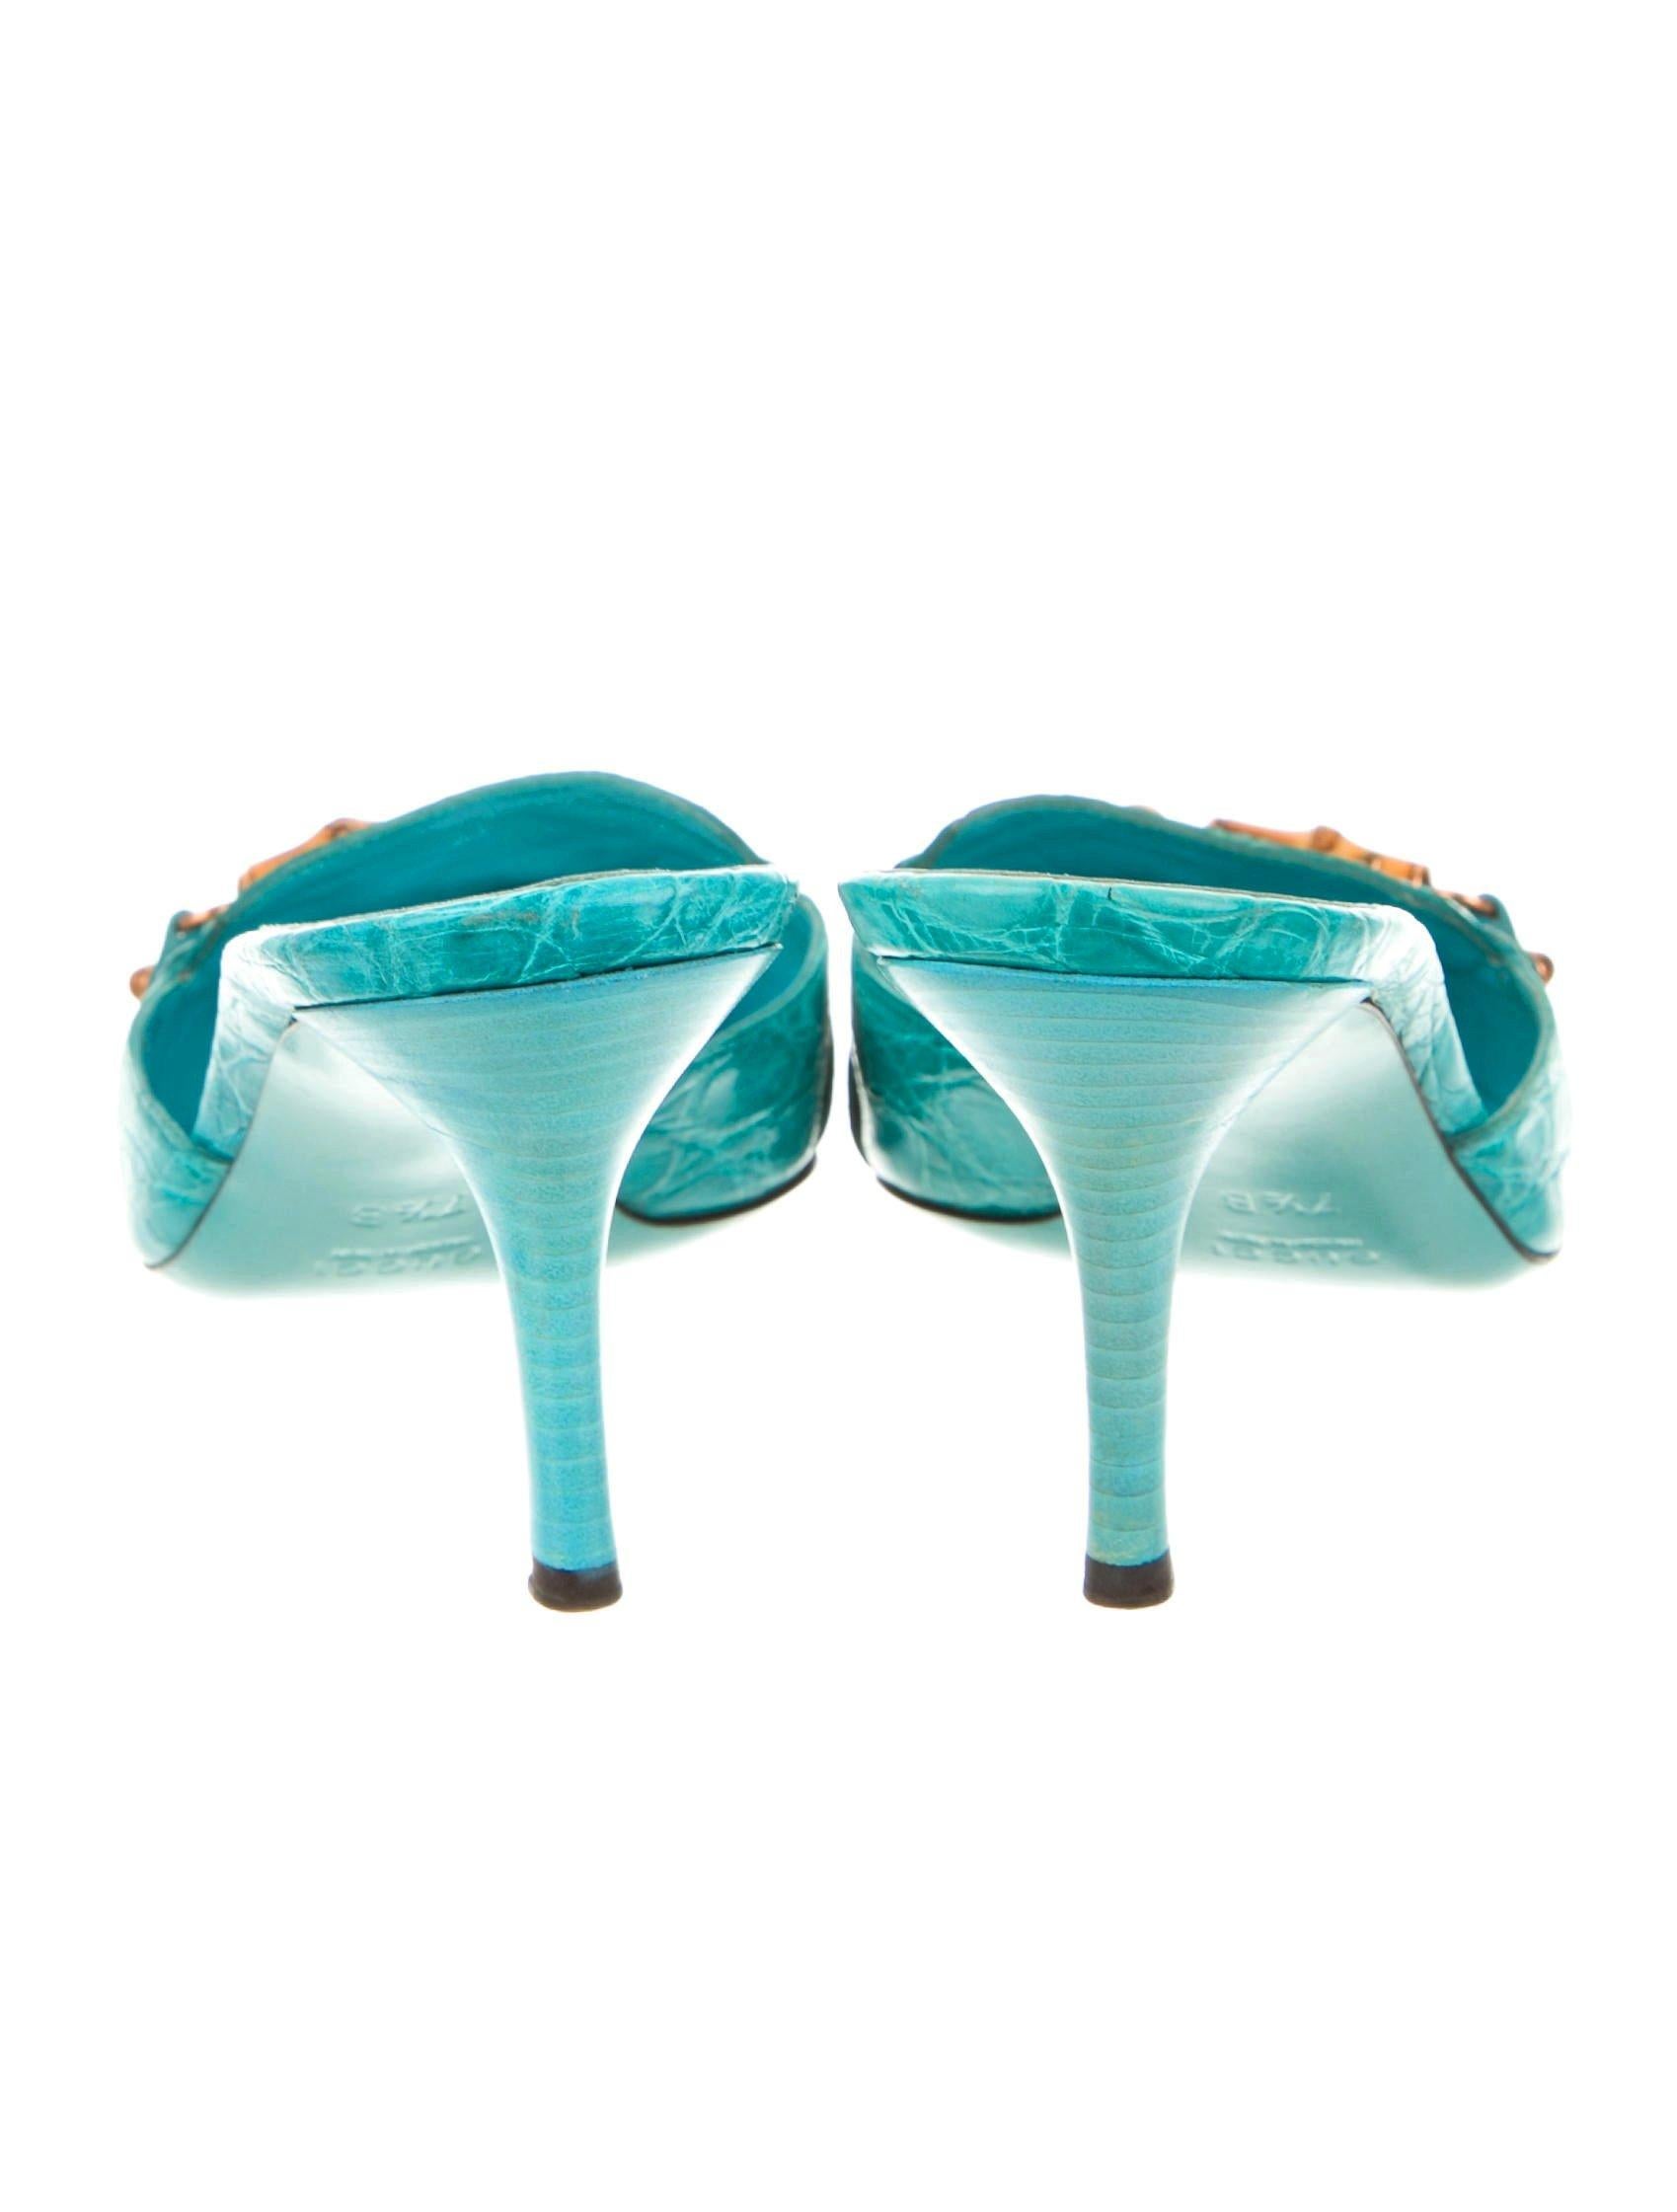 turquoise kitten heels